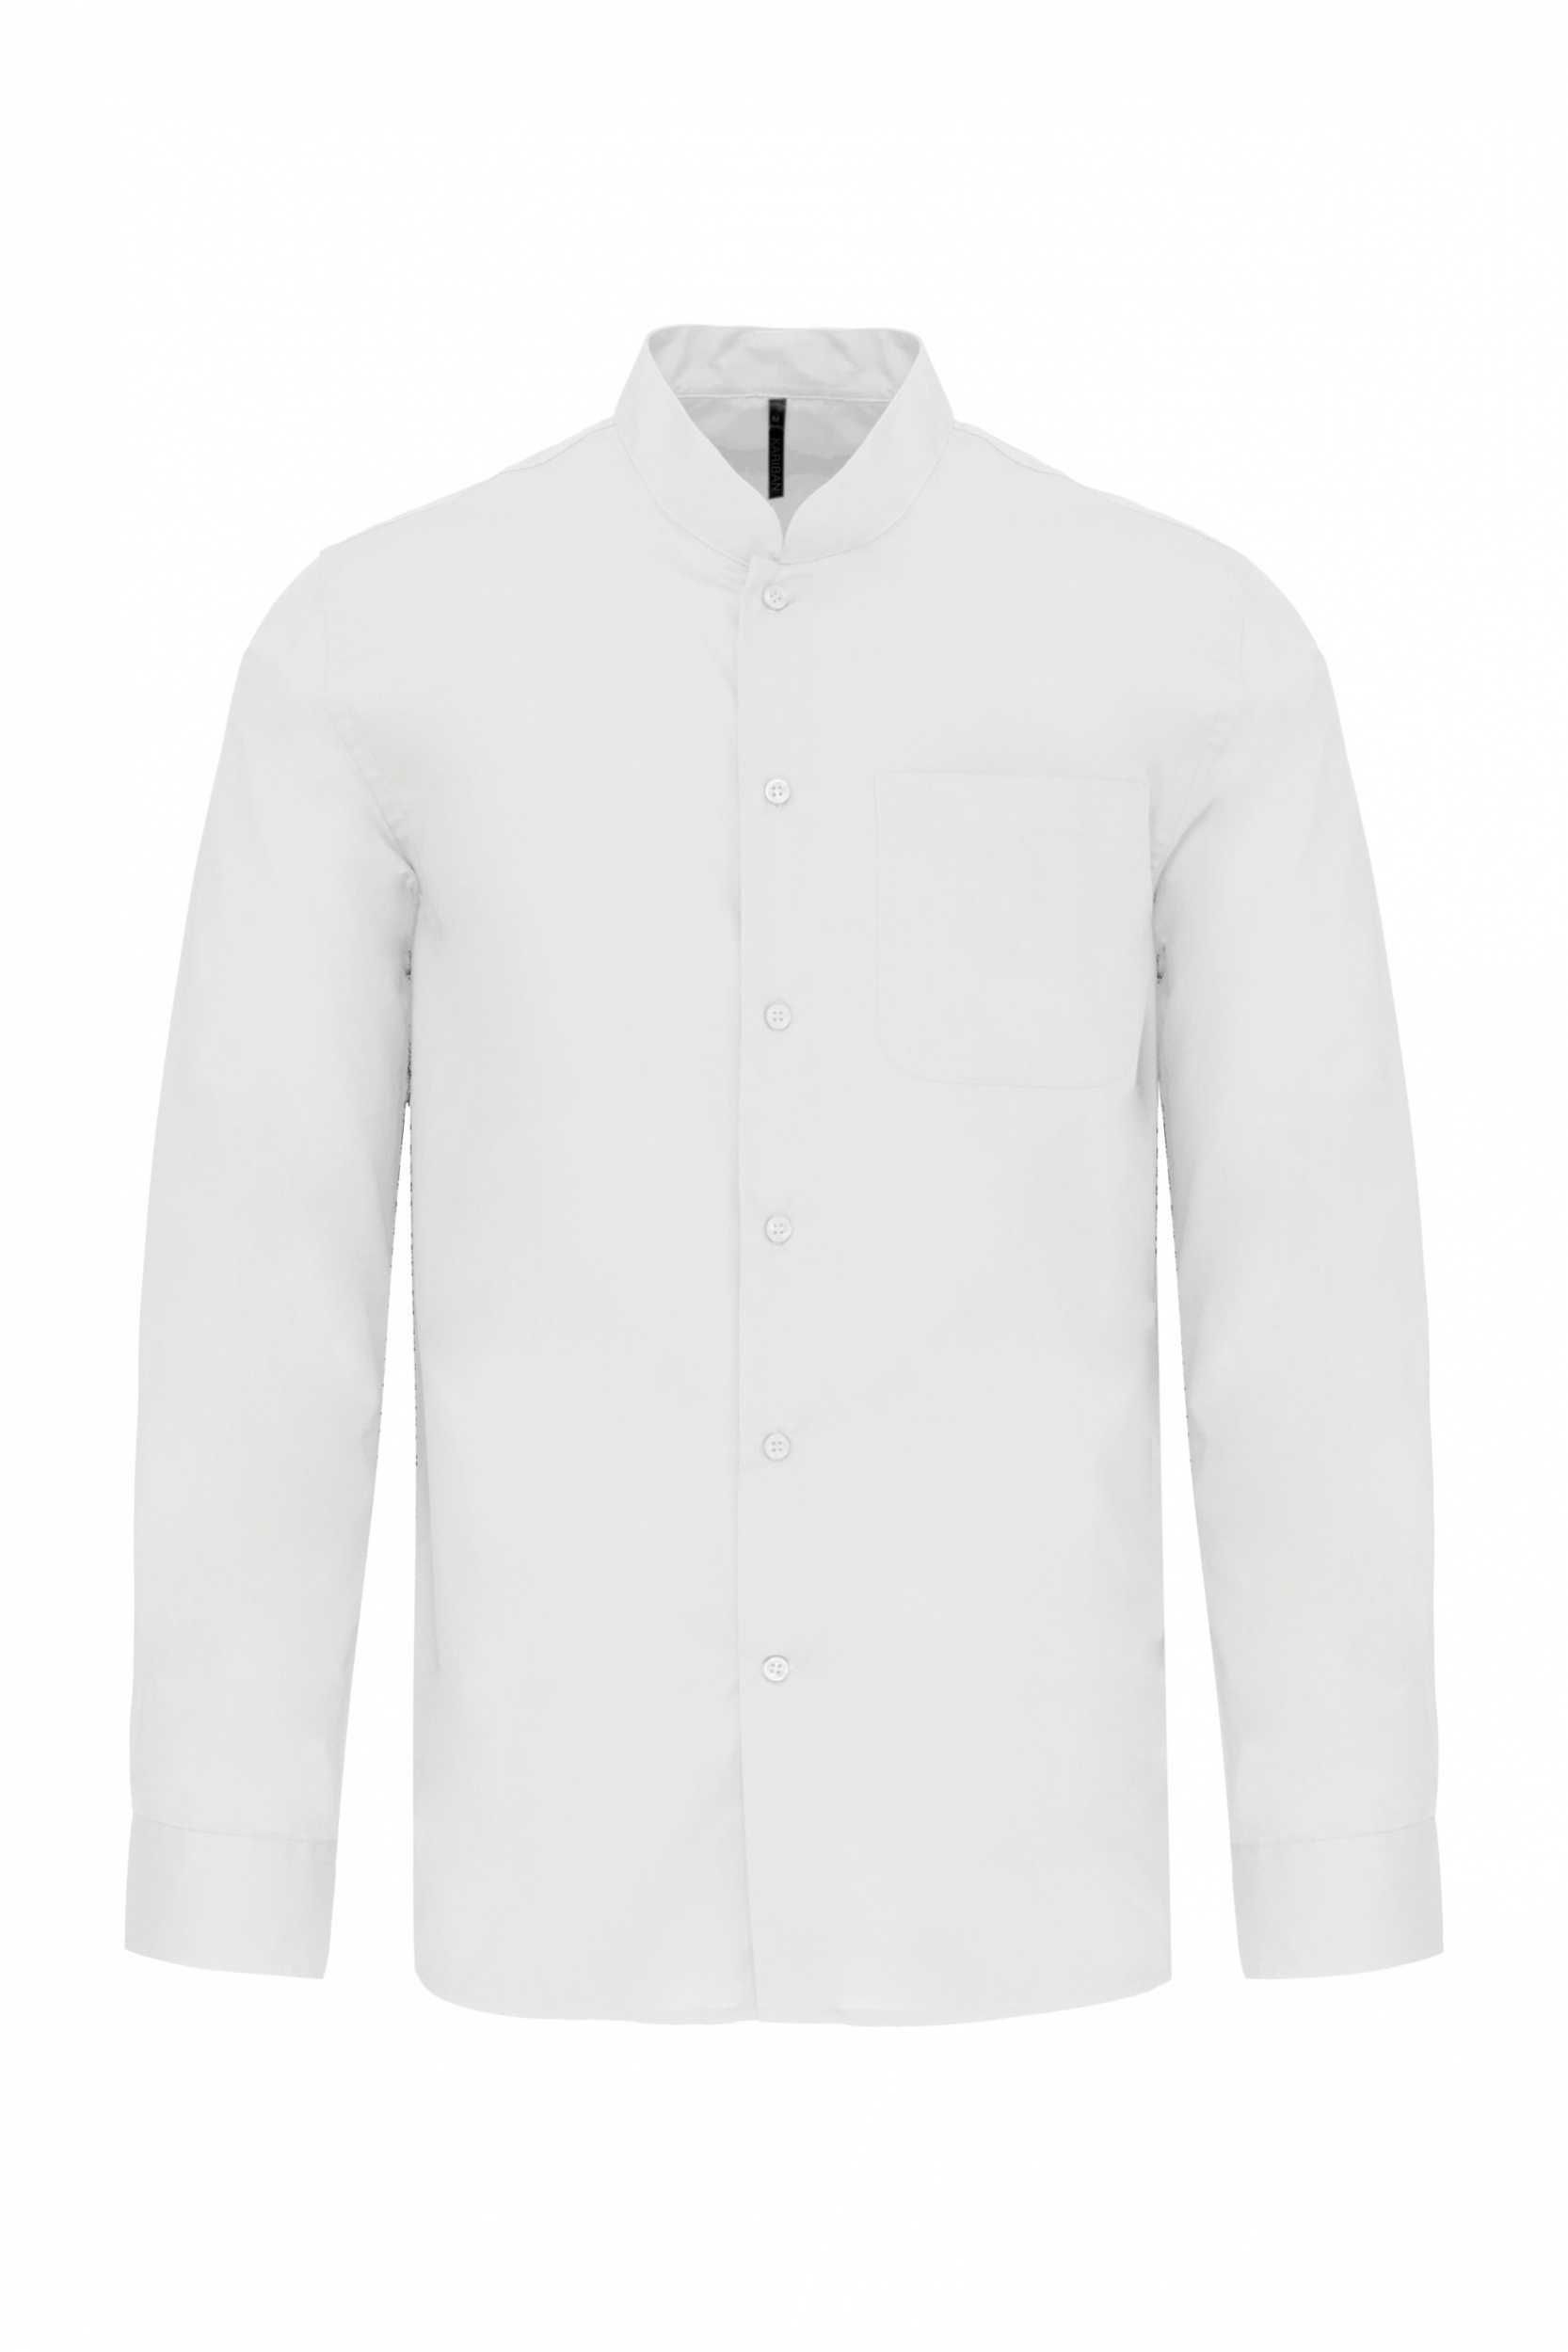 Camisas Brancas Tam. S Gola Mao, Farda Restauração, Kariban K515